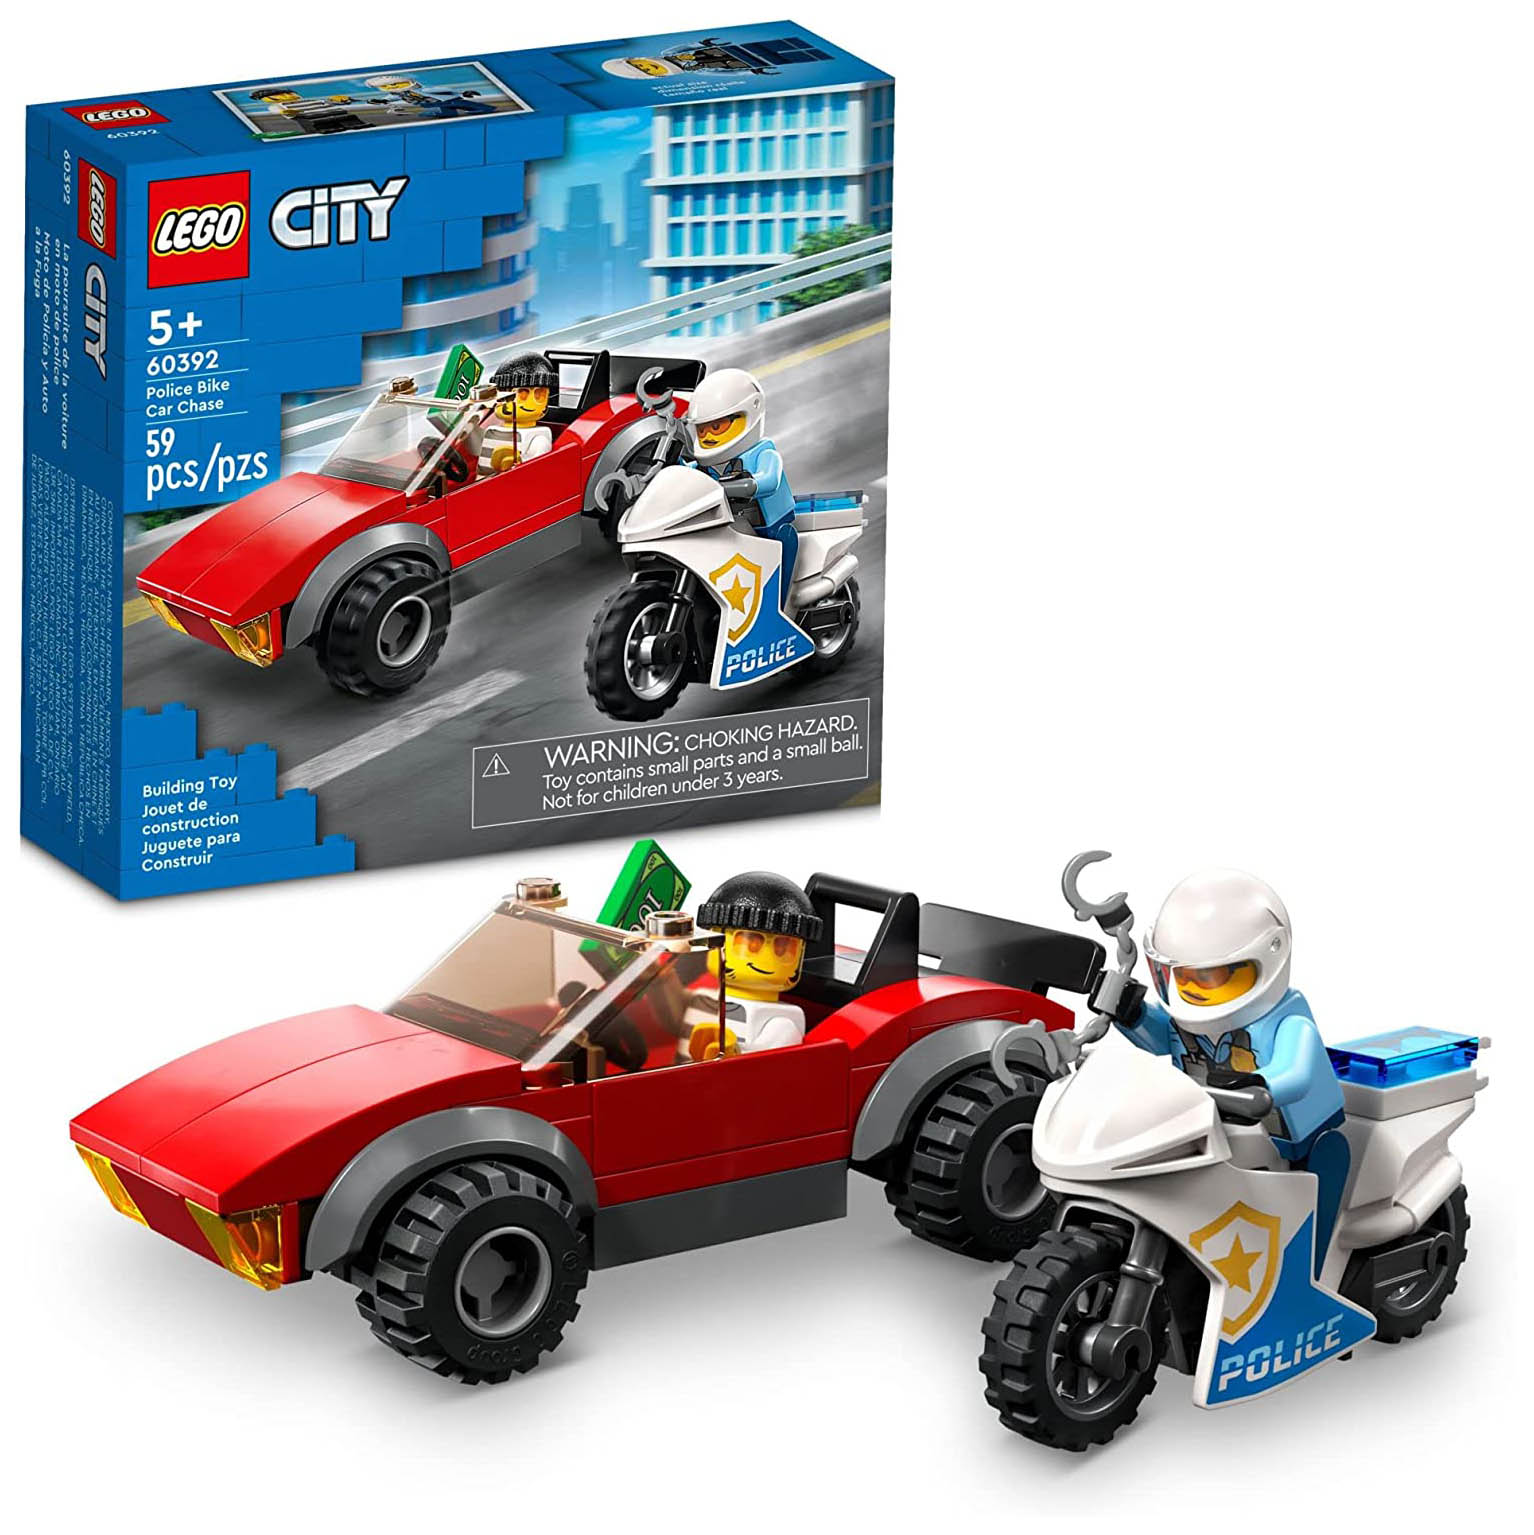 Конструктор LEGO City Полицейская погоня на байке, 59 деталей, 60392 полицейские наручники и значок lego